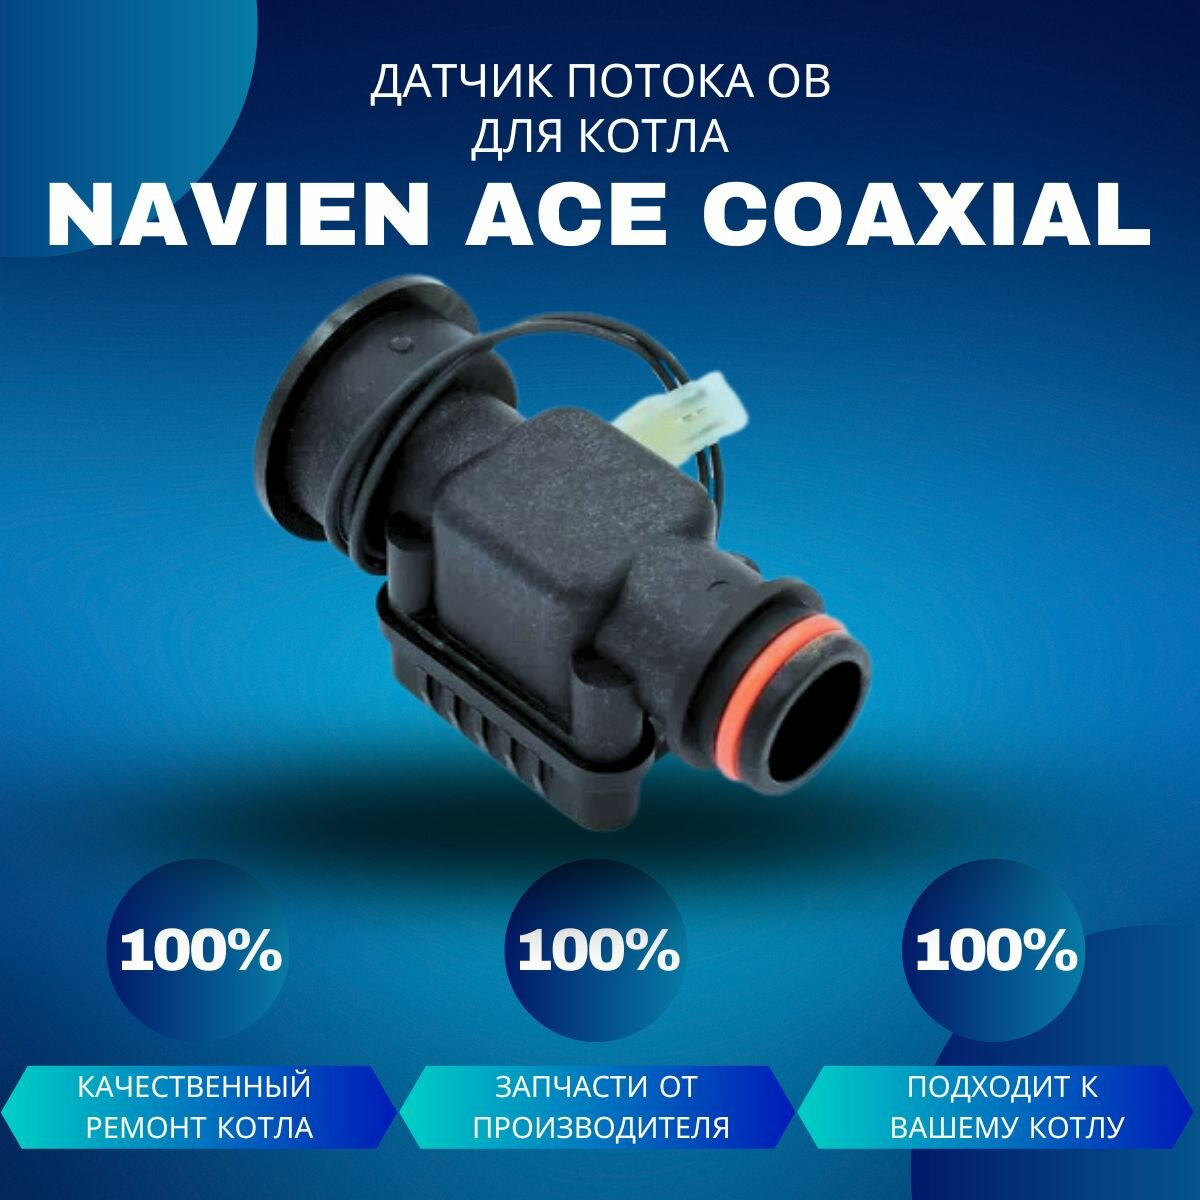 Датчик потока ОВ для котла Navien ACE Coaxial